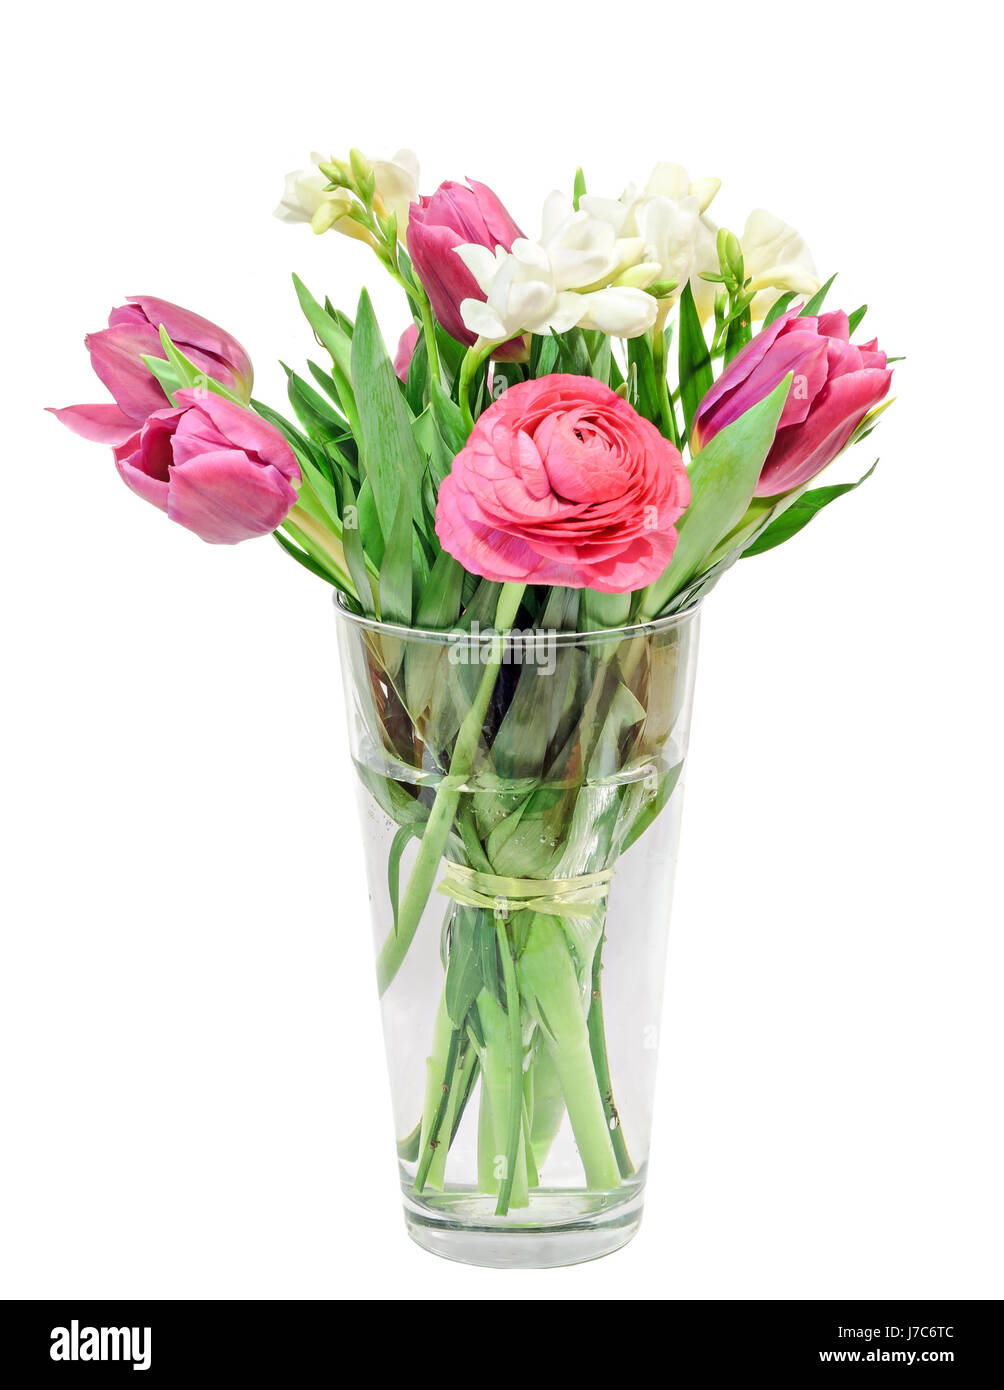 Tulipes rouges, blancs, freesias renoncules fleurs, bouquet, bouquet de fleurs dans un vase transparent rempli d'eau, isolé, fond blanc. Banque D'Images